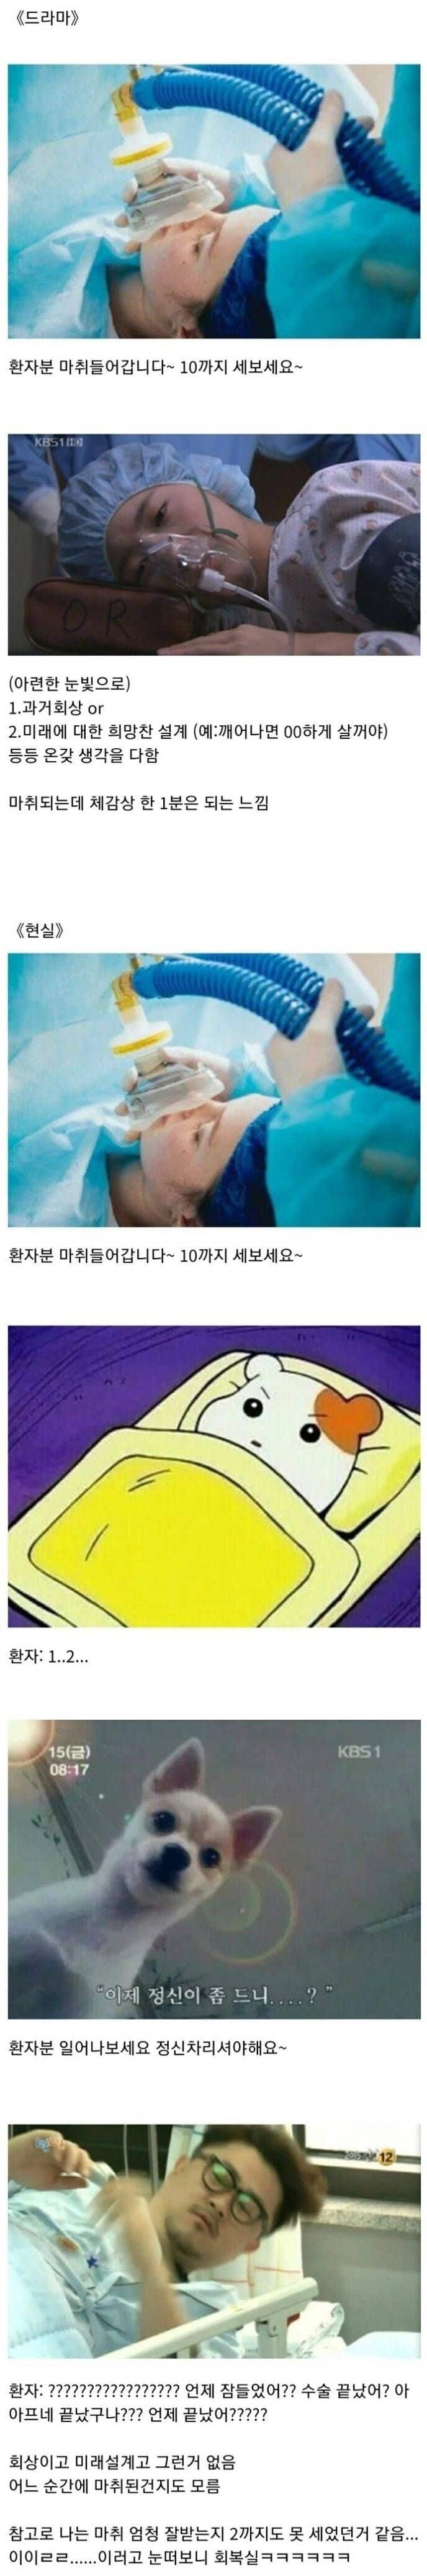 현실과 드라마의 마취.